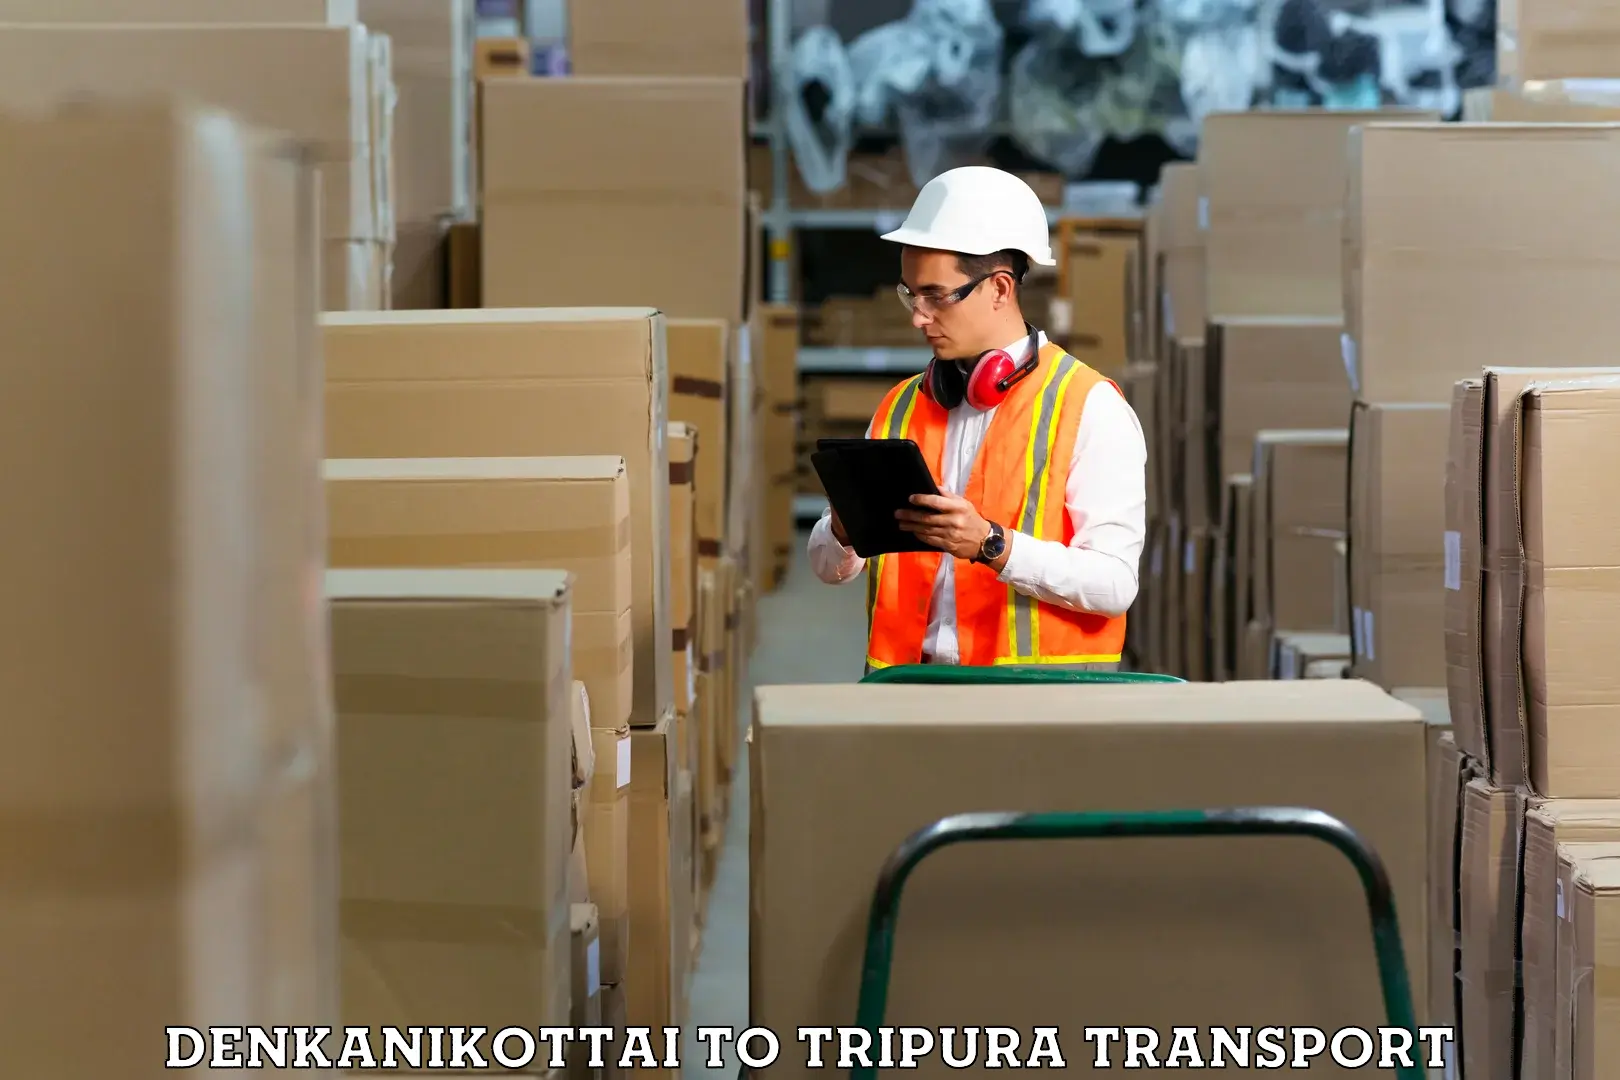 Daily transport service Denkanikottai to IIIT Agartala